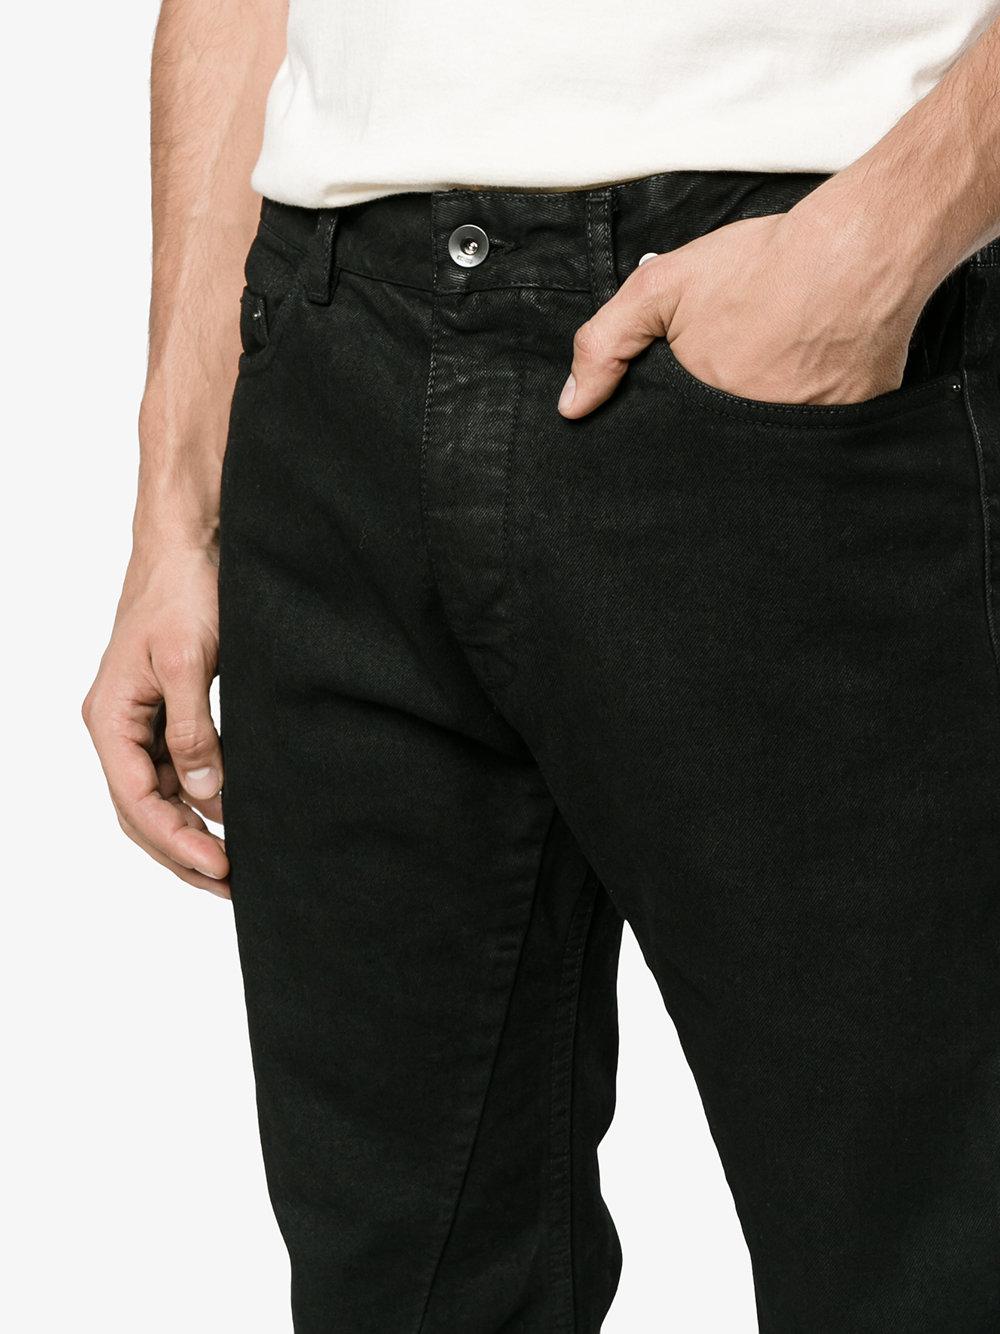 Rick Owens Drkshdw Denim Torrance Cut Waxed Jeans in Black for Men - Lyst